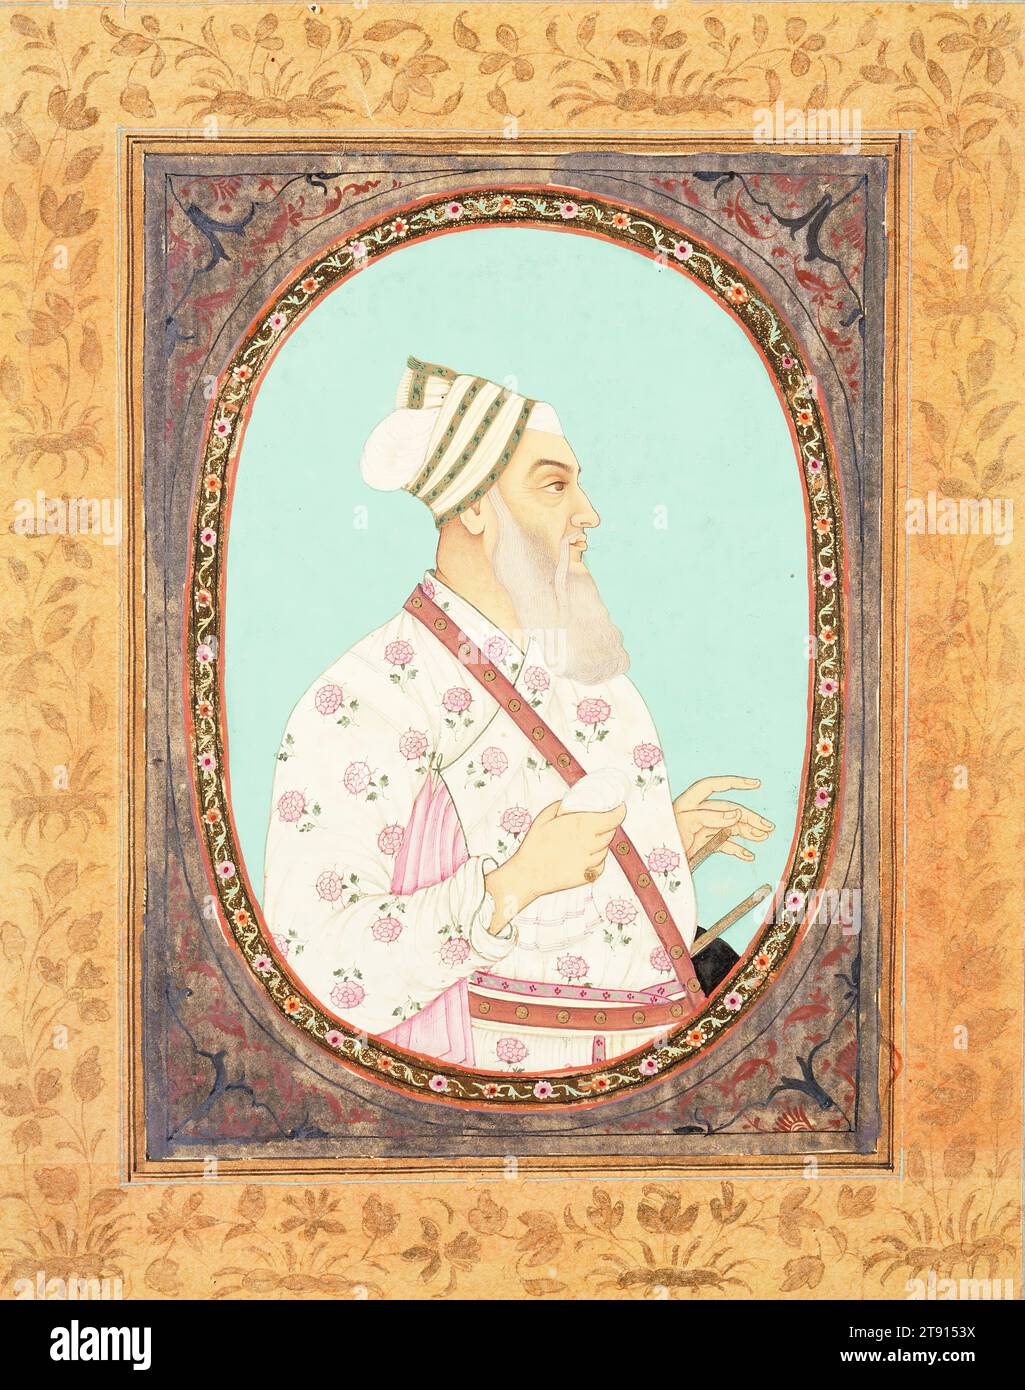 Portrait du général Nawah Firoz Khan, début du 18e siècle, 7 7/8 x 6 3/8 po. (20 x 16,19 cm), aquarelles opaques et or sur papier, Inde, 18e siècle, ce portrait finement exécuté du général Firoz Khan, noble du XVIIe siècle et membre de la cour Golkonda dans le Deccan, démontre que la peinture d'inspiration persane a prospéré à Golkonda avant que le souverain moghol Aurangzeb ne la conquit finalement en 1687. Les dirigeants du plateau du Deccan étaient musulmans, comme les Moghols, mais alors que les Moghols étaient sunnites et influencés par la peinture orientale iranienne et d'Asie centrale Banque D'Images